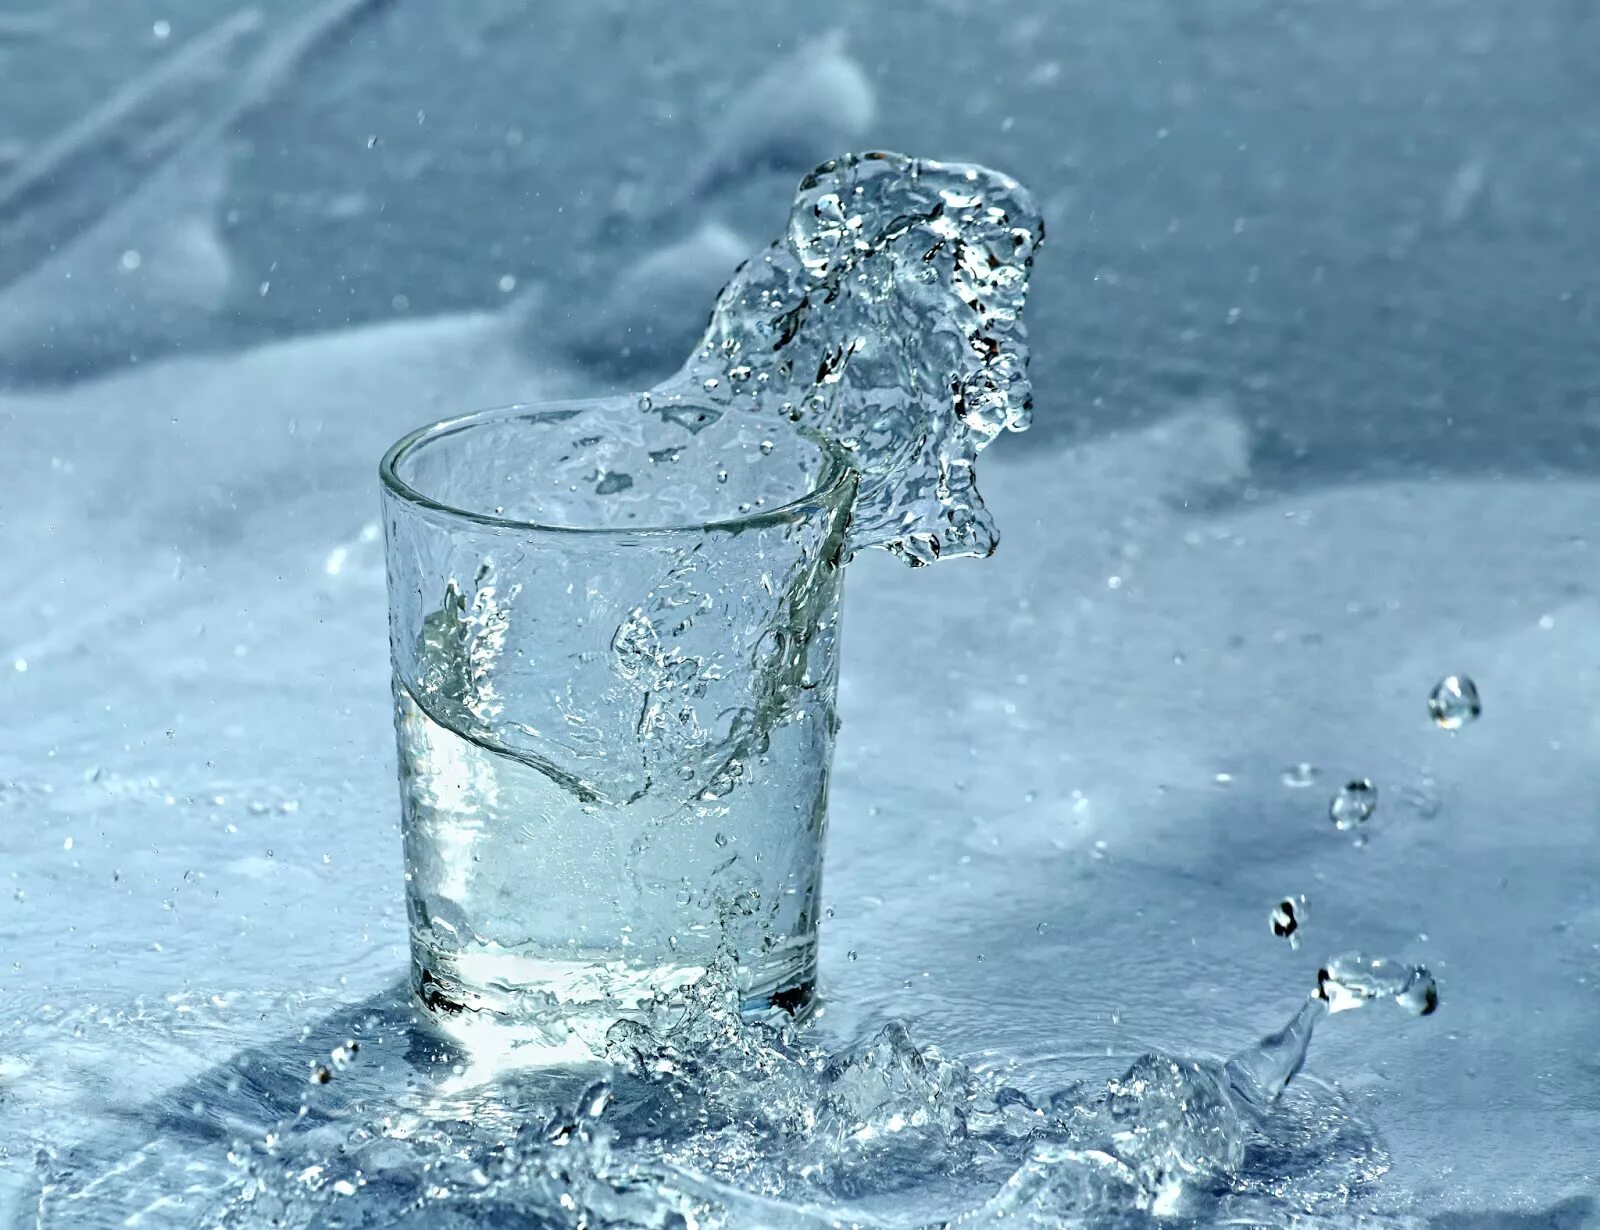 Замерзание воды. Снег и лед в стакане. Стакан со снегом и водой. Стакан воды на фоне снега. Стакан воды зимой.